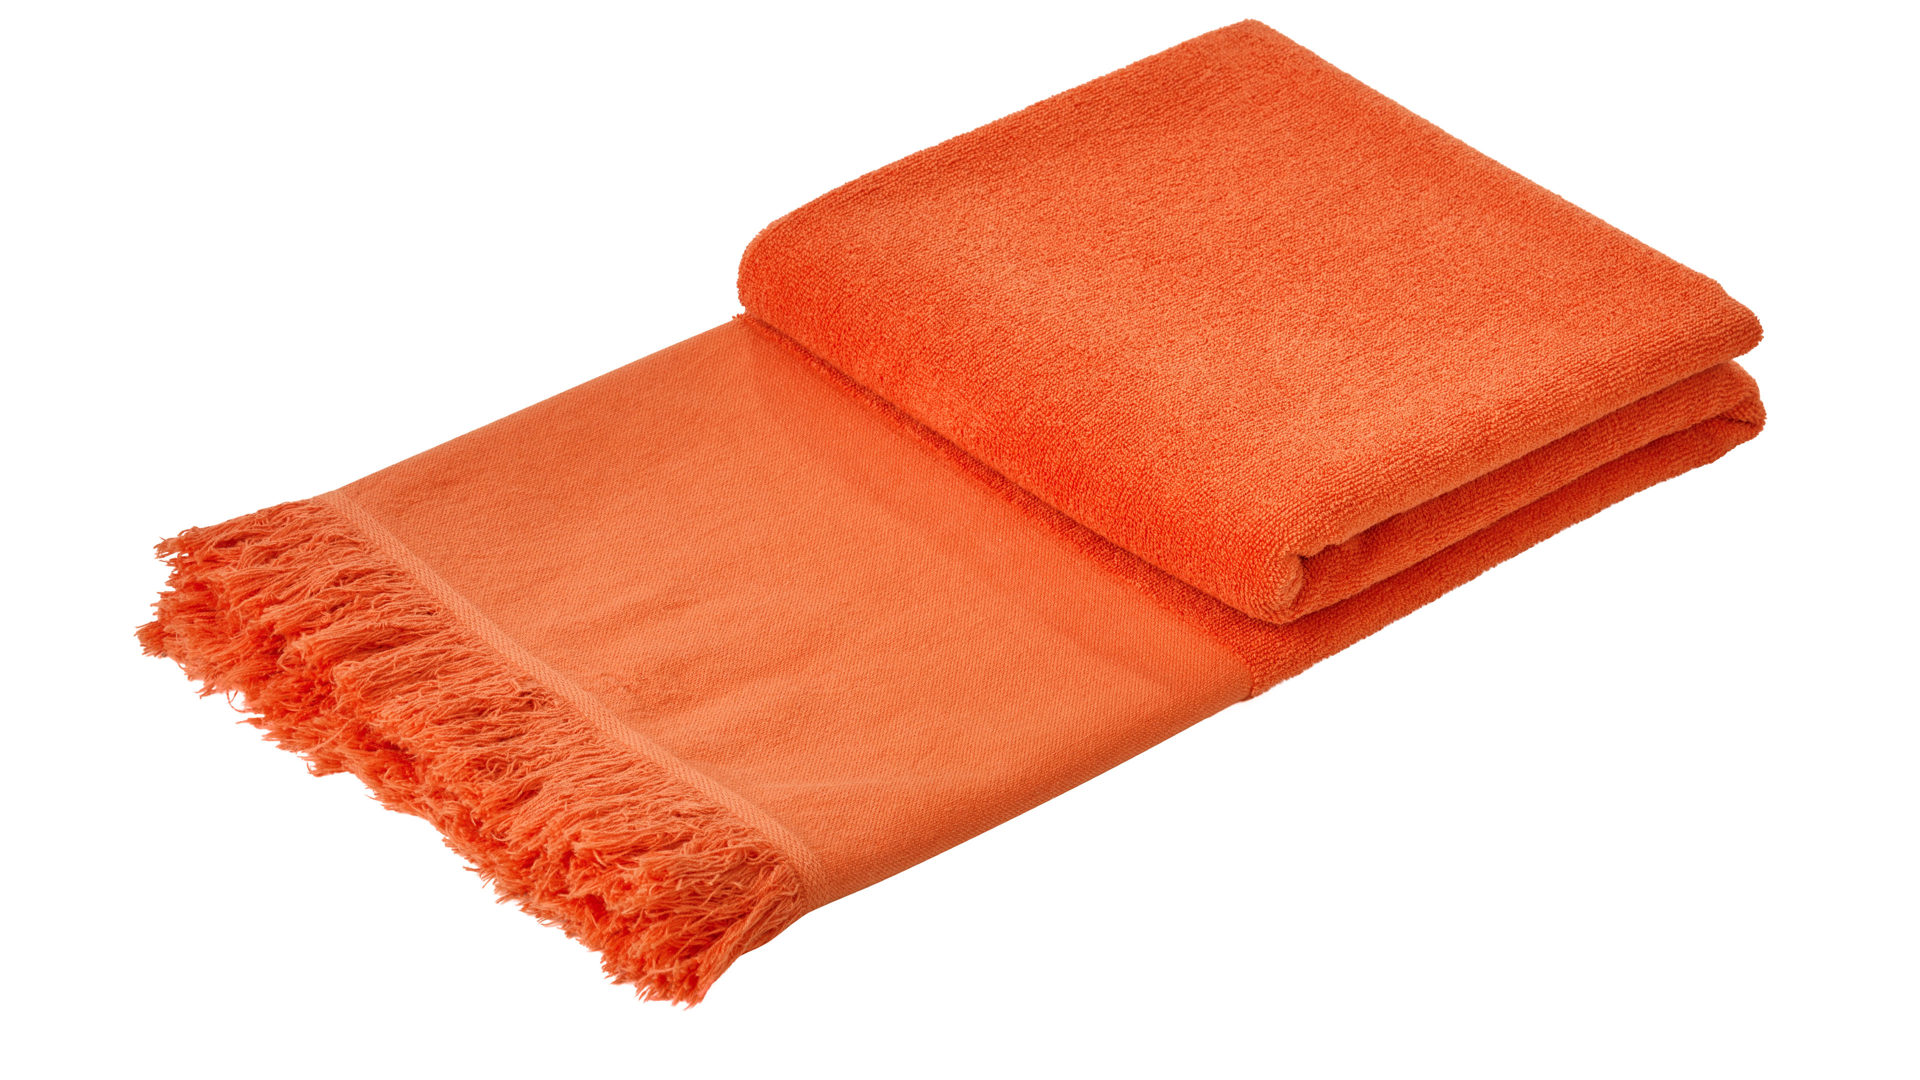 Hamamtuch Done.® aus Stoff in Orange done.® Hamamtuch Caprice korallenfarbene Baumwolle – ca. 95 x 180 cm